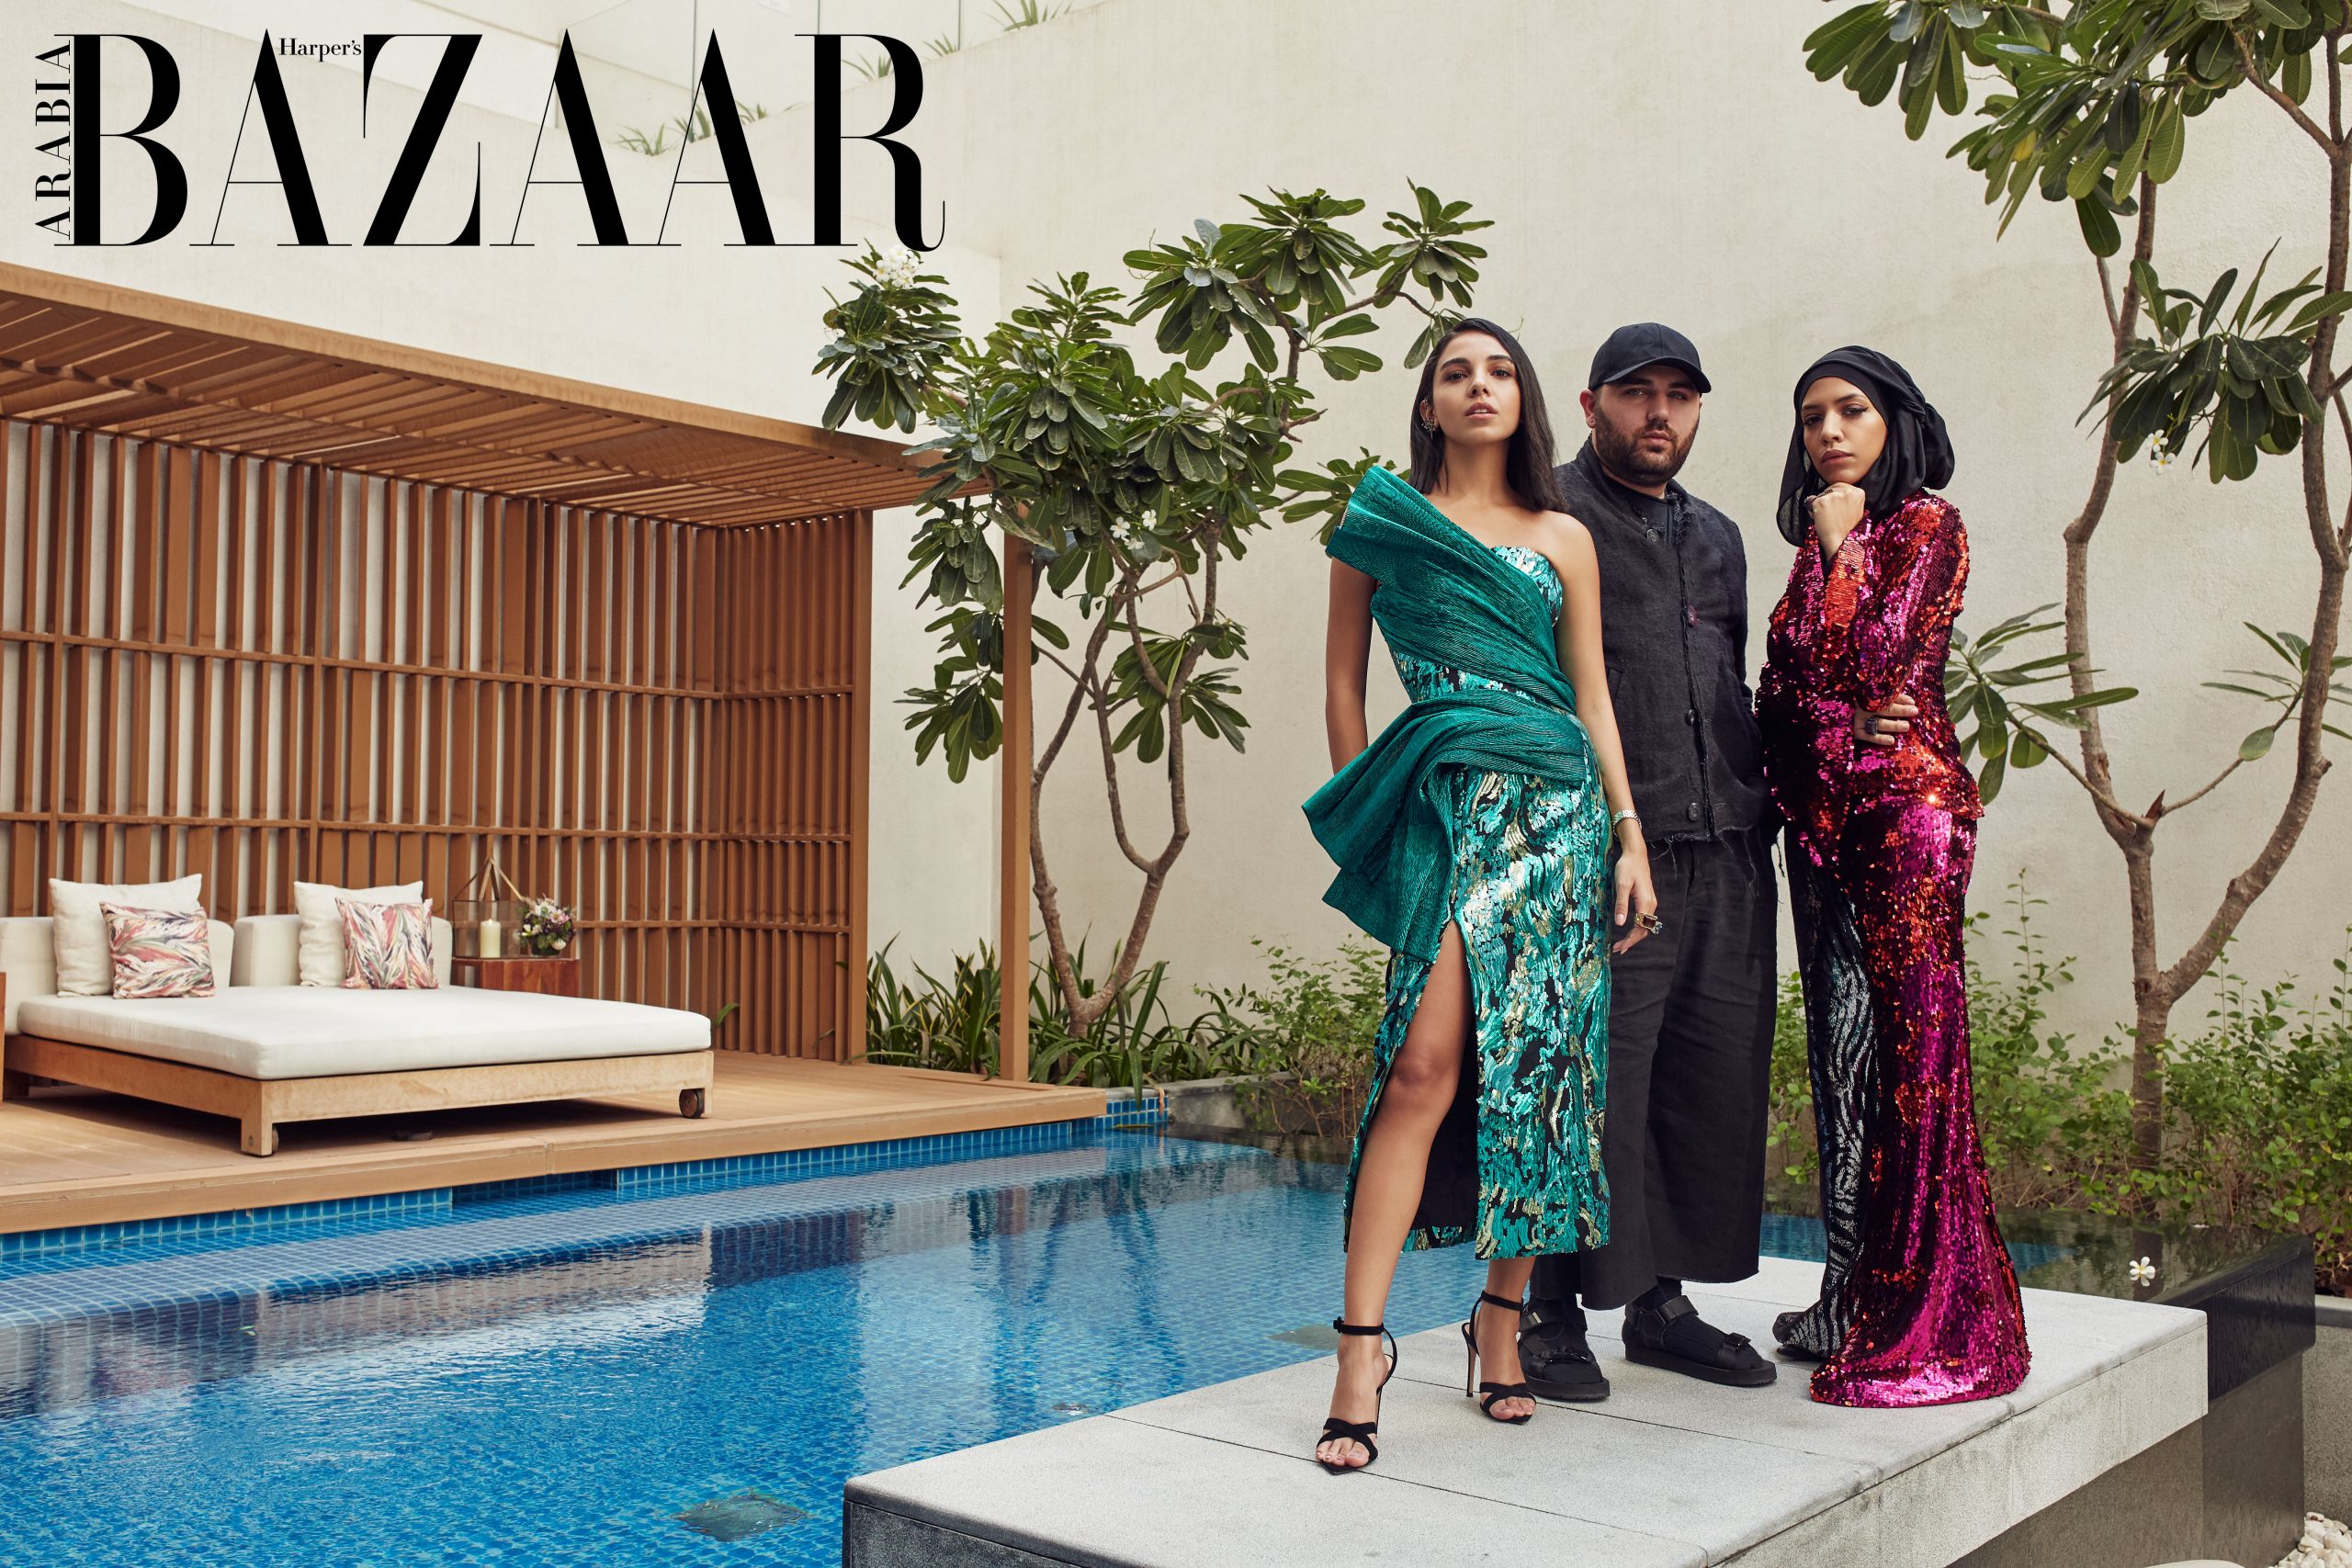 Introducing the Harper's Bazaar scholarship